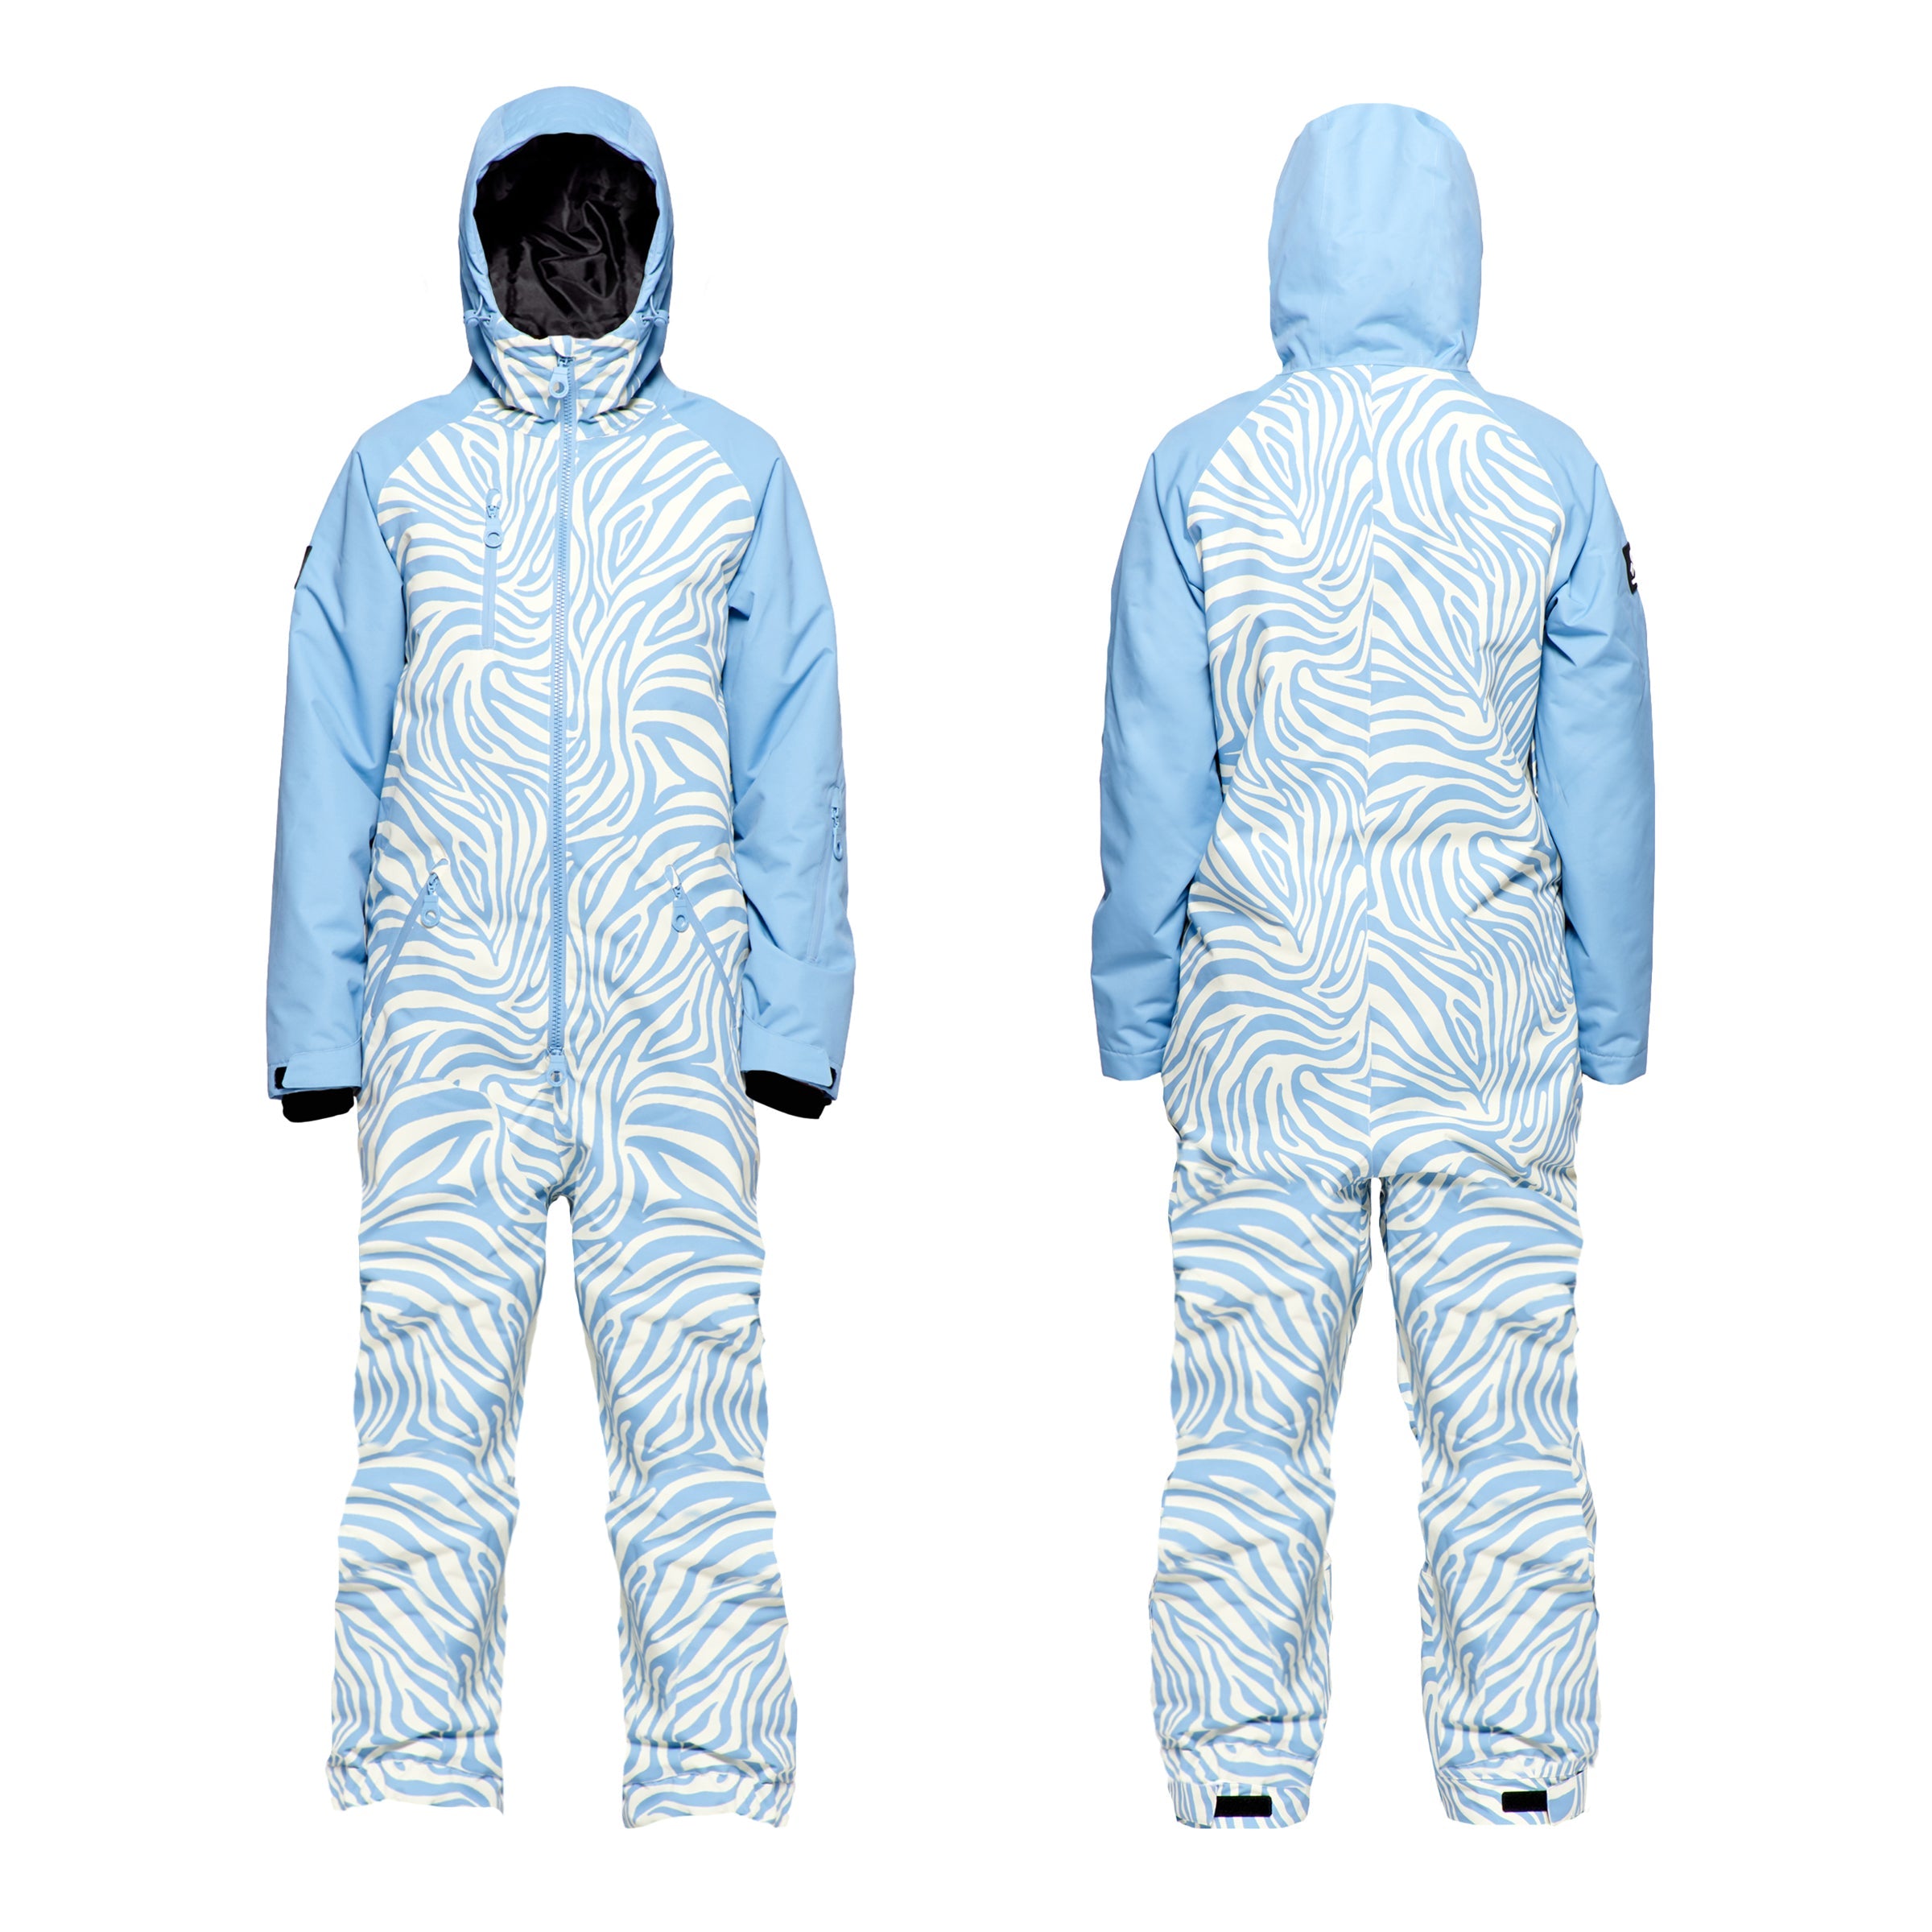 Women's Snow Suit, Blue Zebra